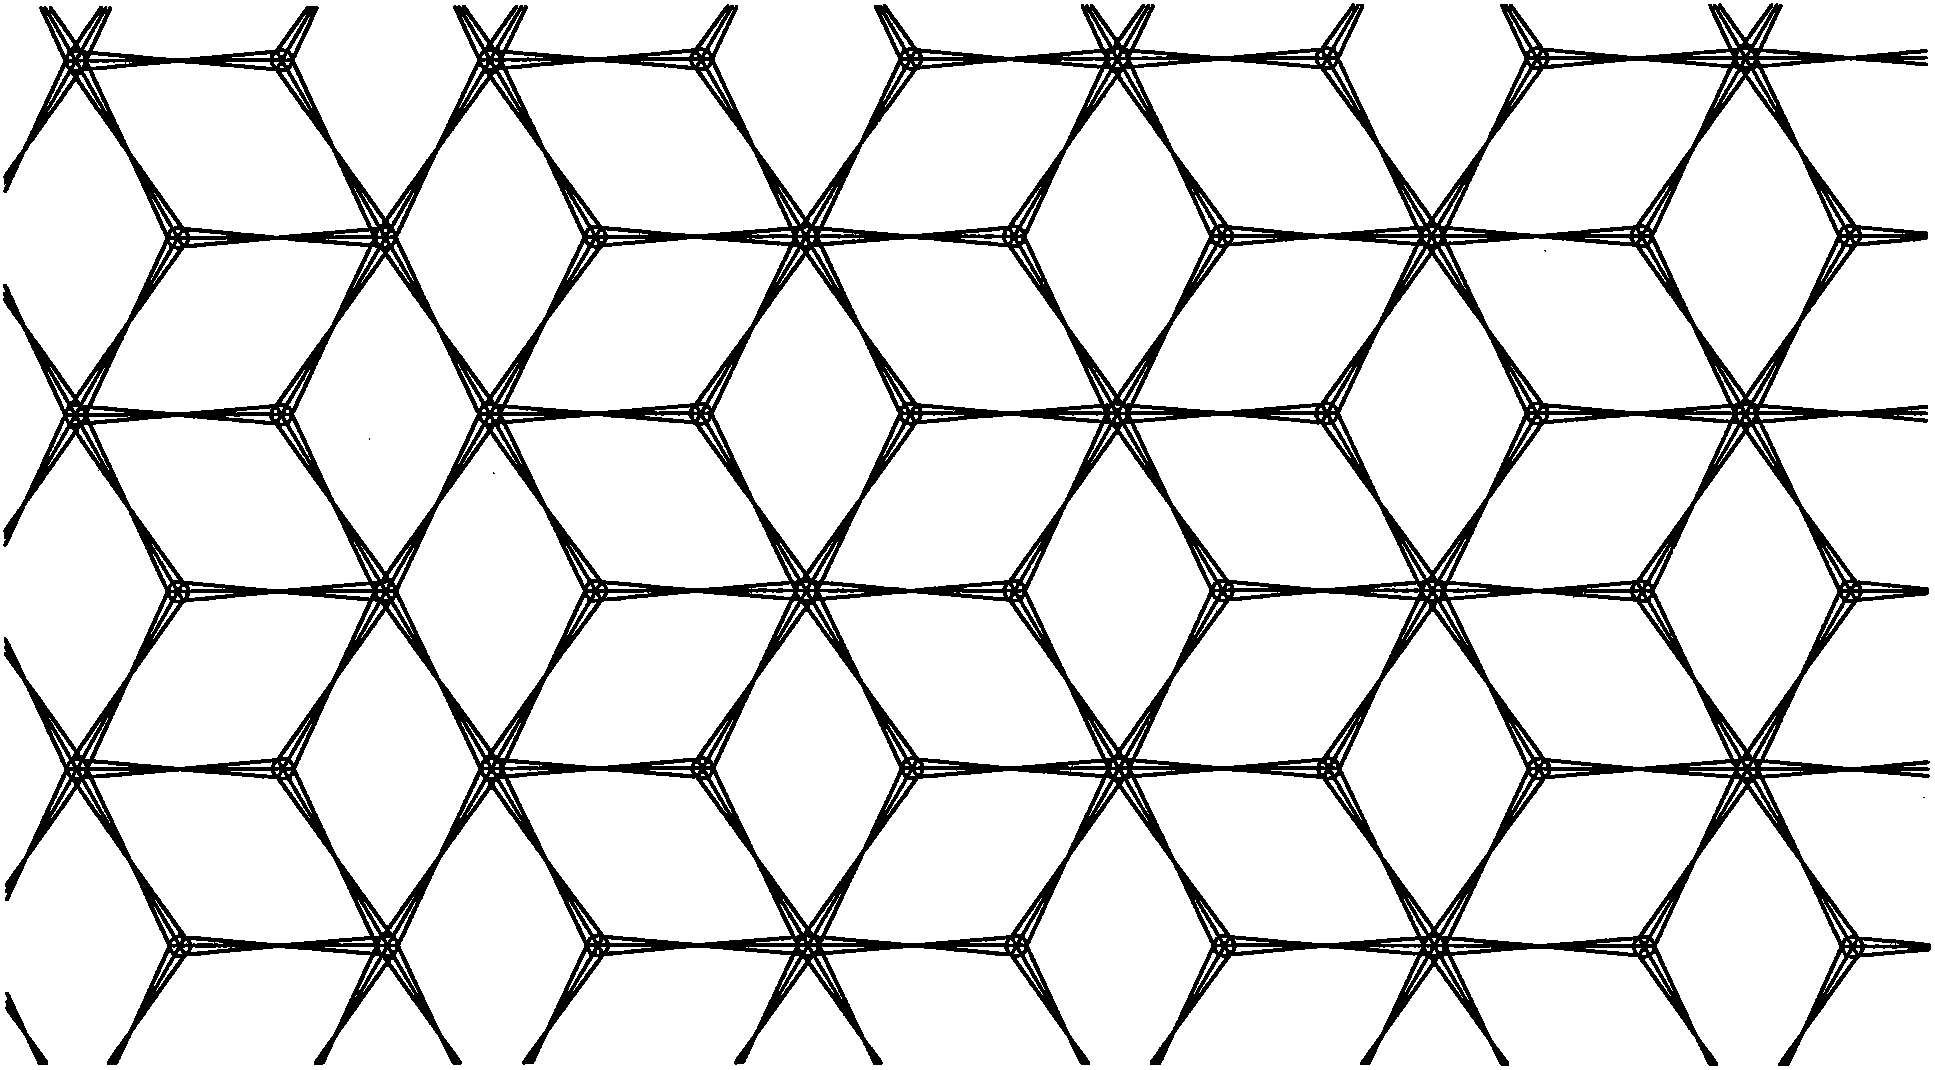 一种塑料拉伸菱形网状结构材料及其制造方法